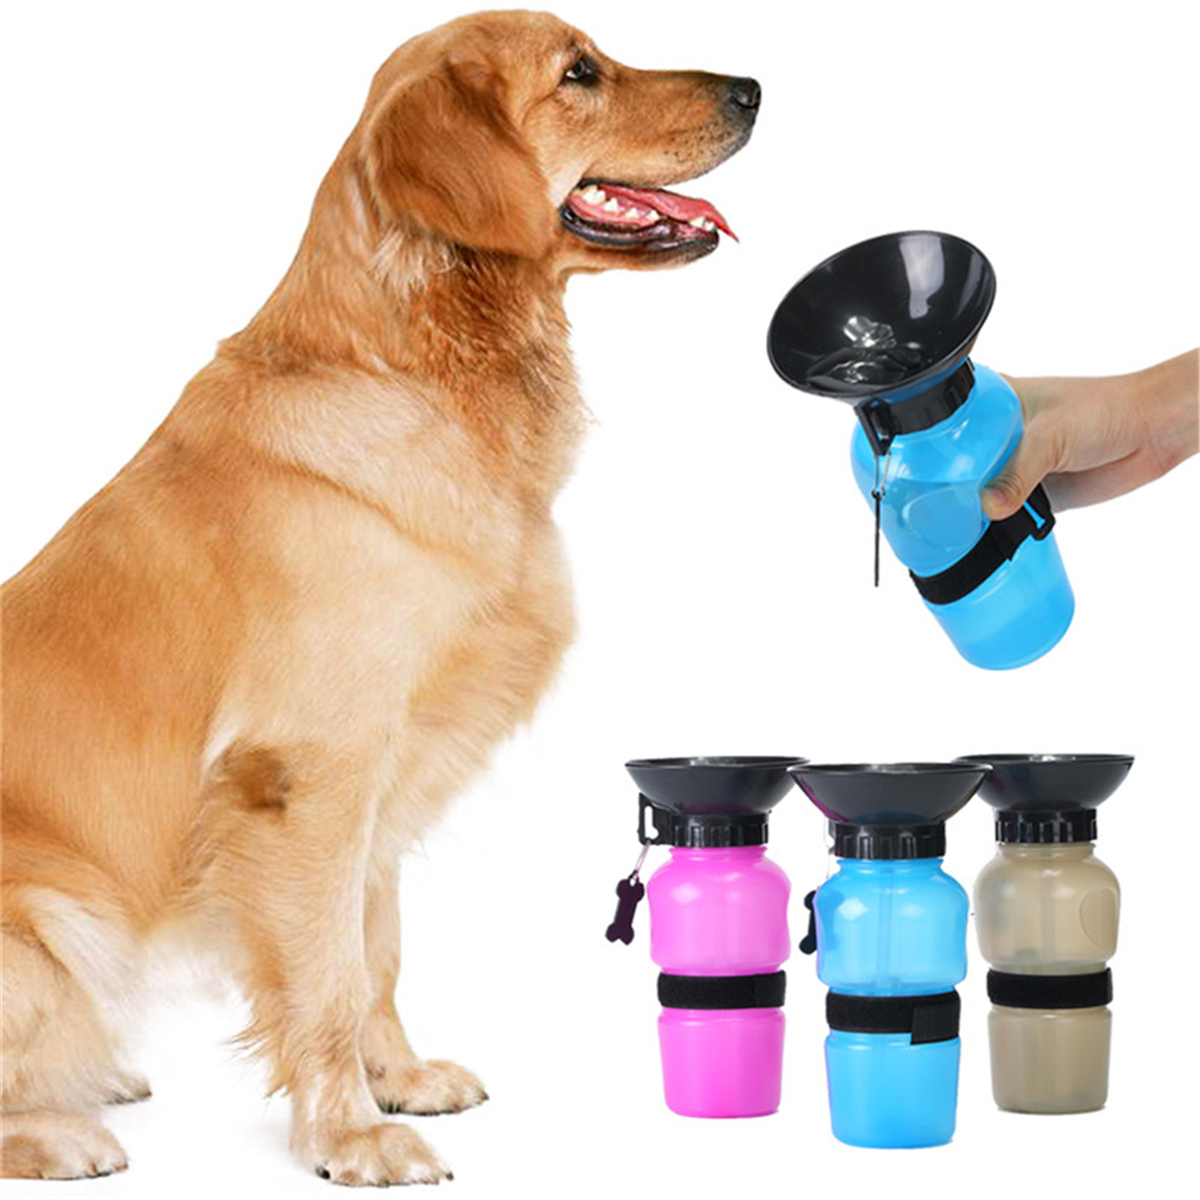 New-Pet-Travel-Mug-Water-Bowl-Bottle-Cat-Dog-Outdoor-Walking-Hiking-Water-Kettle-1188587-1